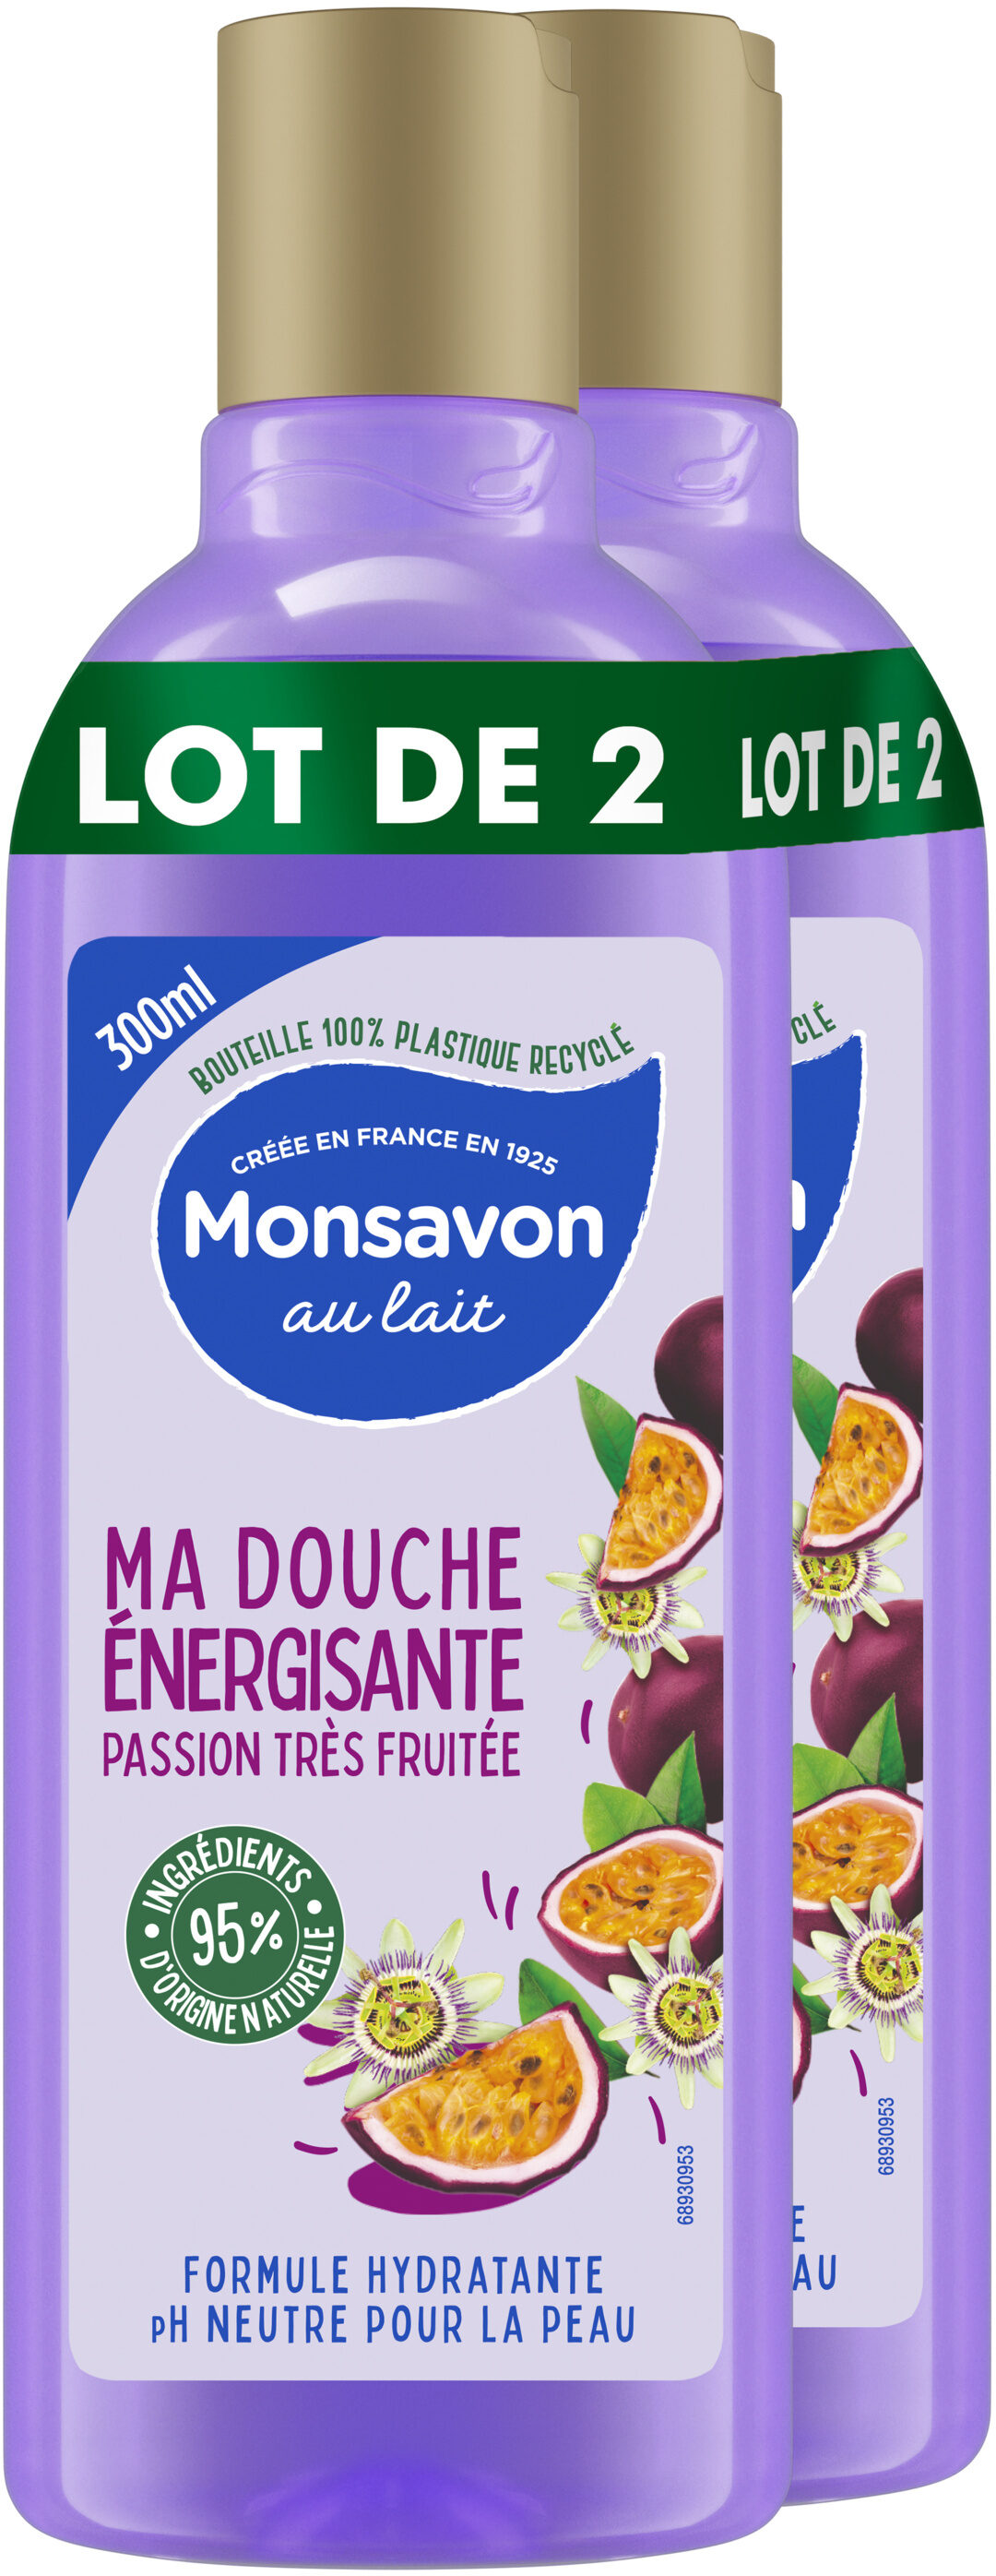 Monsavon Gel Douche Passion Bien Fruitée 300ml Lot de 2 - Produit - fr